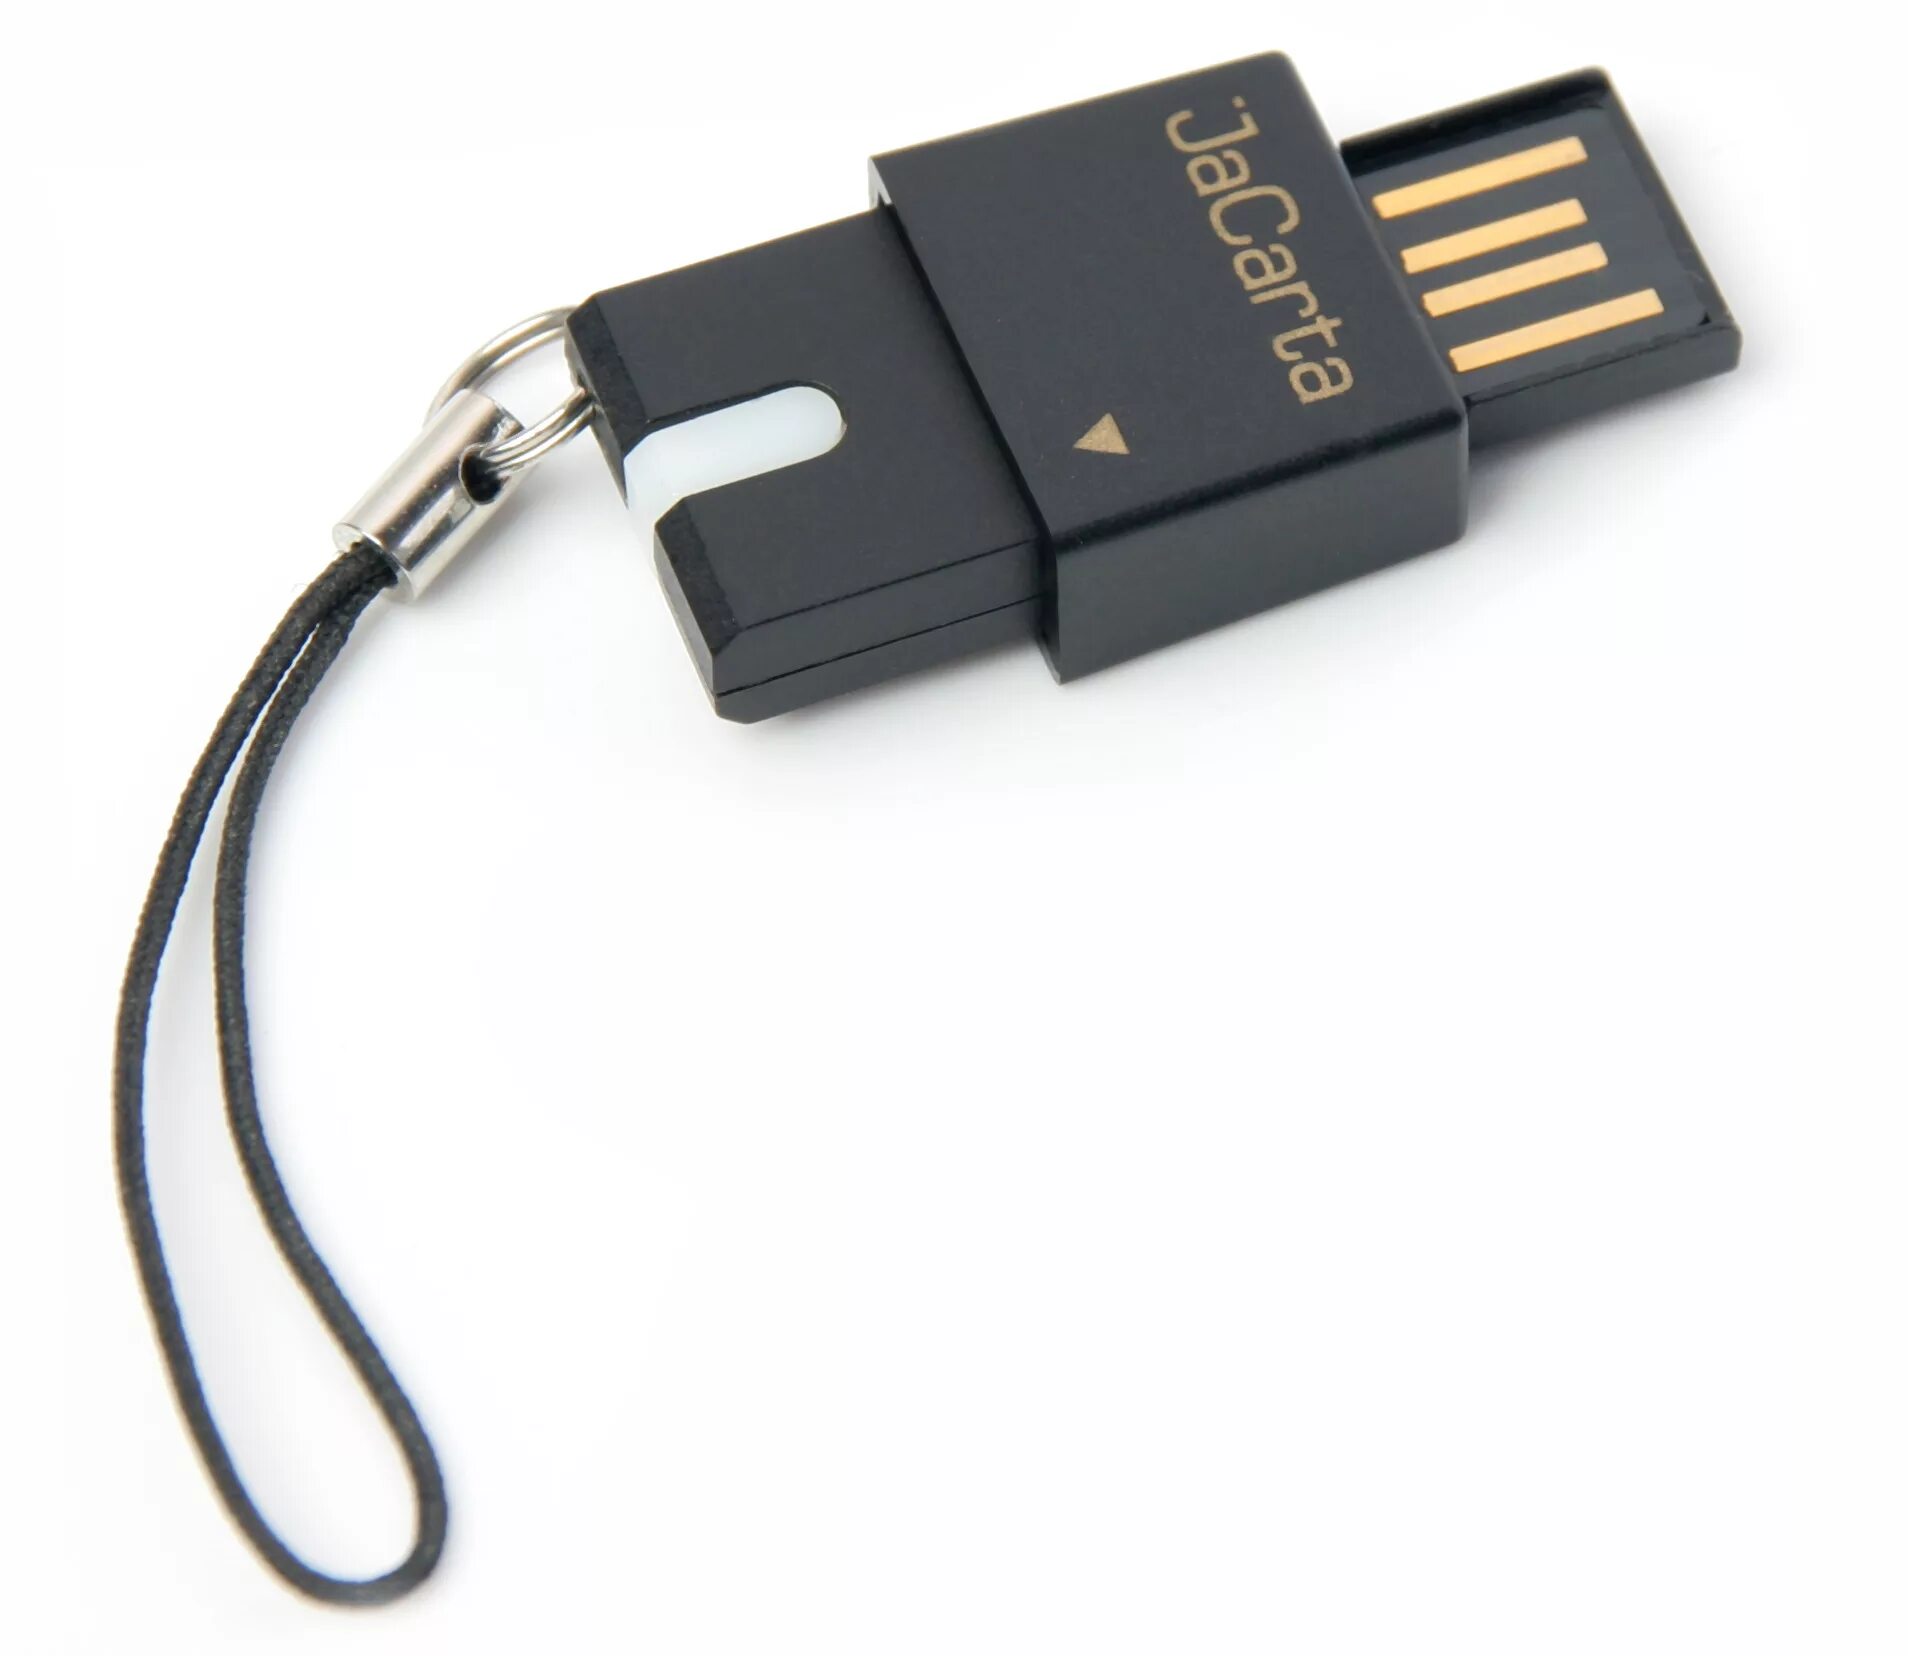 Usb токен купить. USB-токен Jacarta. Micro USB токен Jacarta. USB-токен Jacarta Pro (Nano). Jakarta флешка.